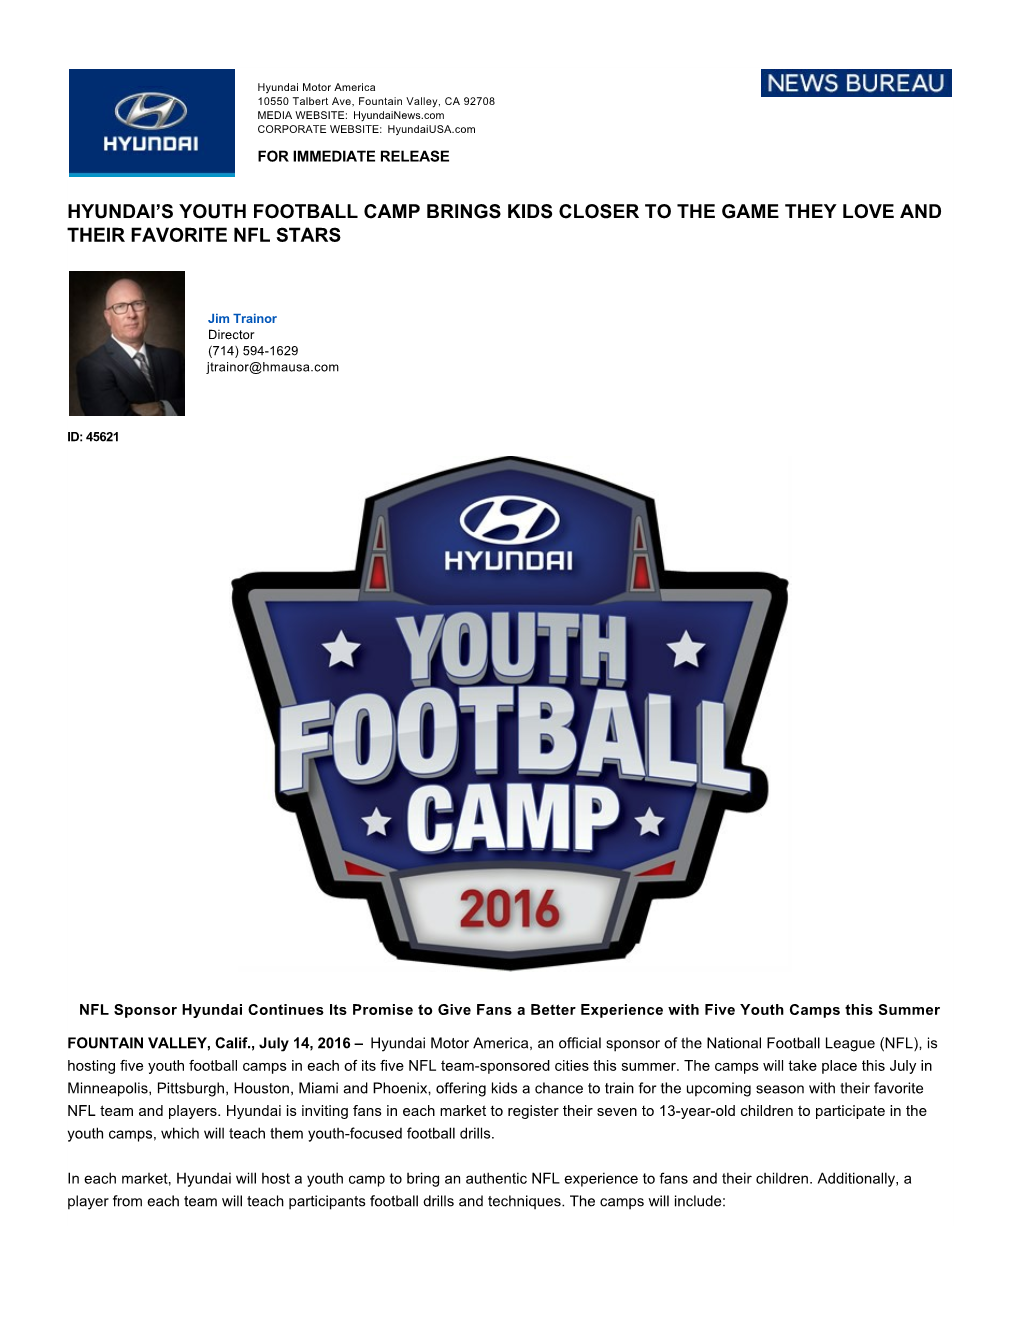 Hyundai's Youth Football Camp Brings Kids Closer To